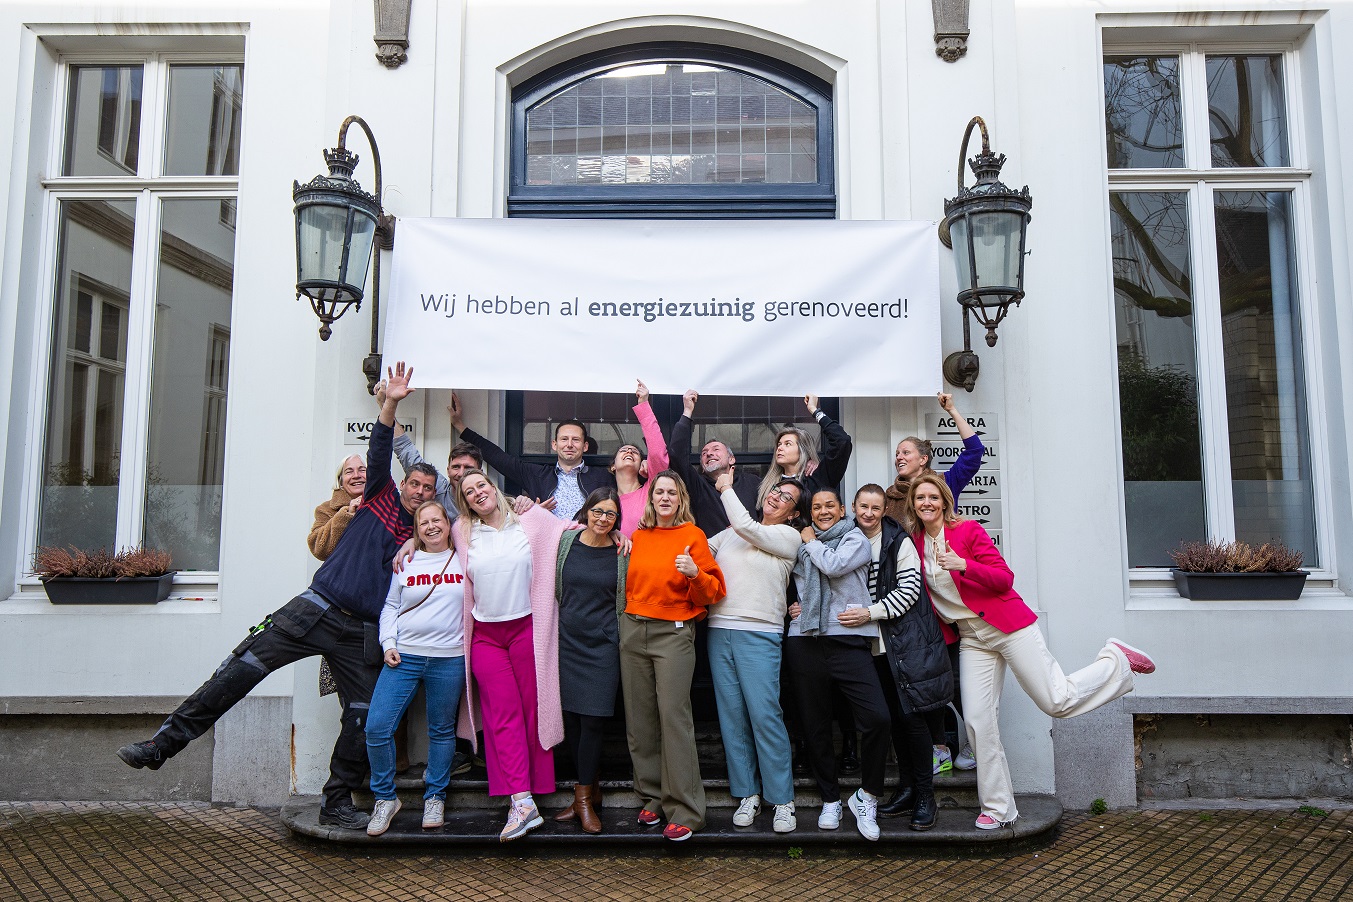 Schoolteam voor schoolgebouw Sint - Ludgardis Antwerpen fotograaf MediaMixer